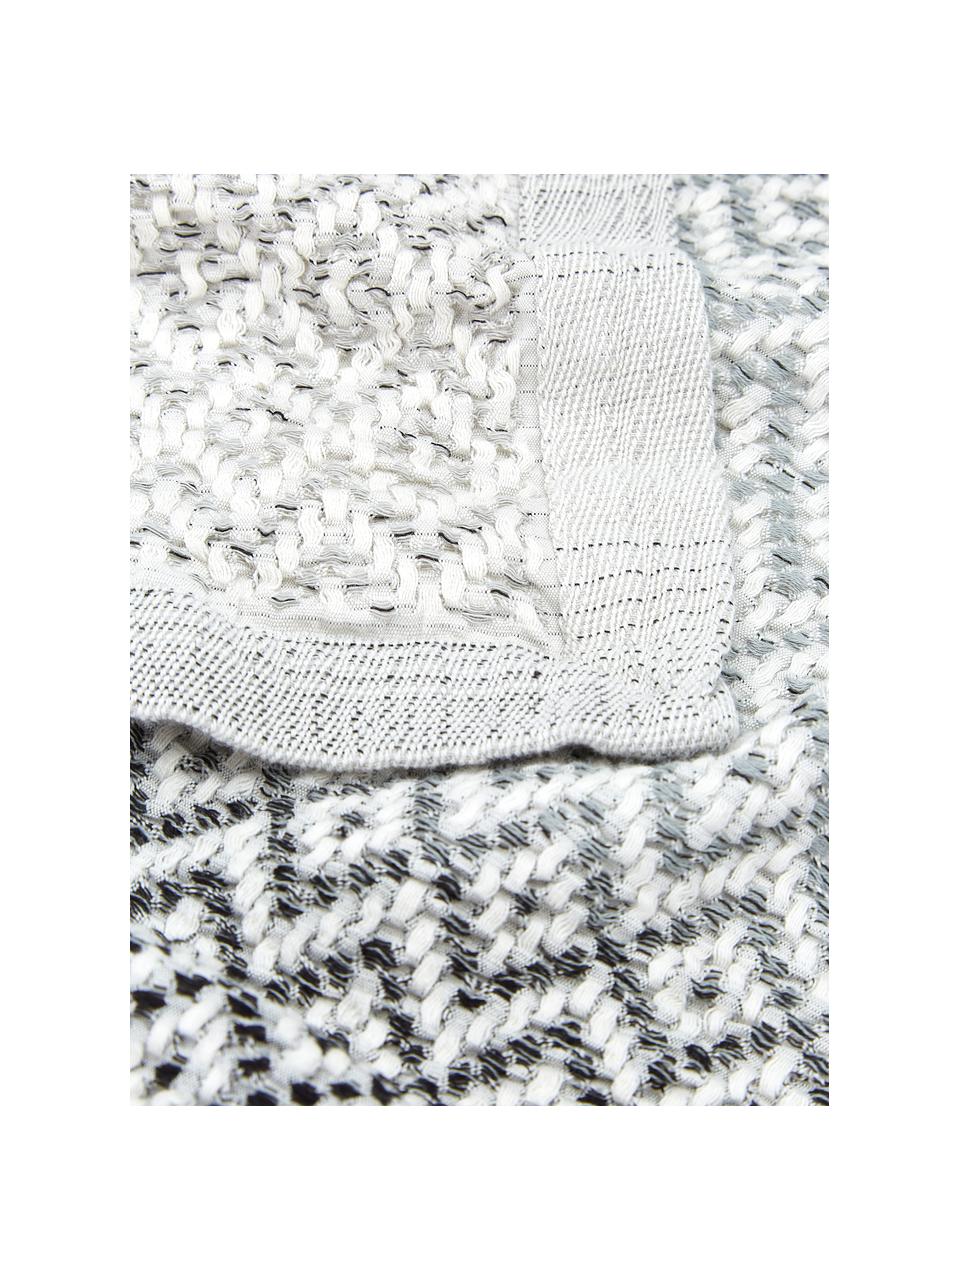 Baumwoll-Tagesdecke Dia mit grafischem Muster, 100% Baumwolle, Schwarz, Weiß, B 180 x L 235 cm (für Betten bis 140 x 200)